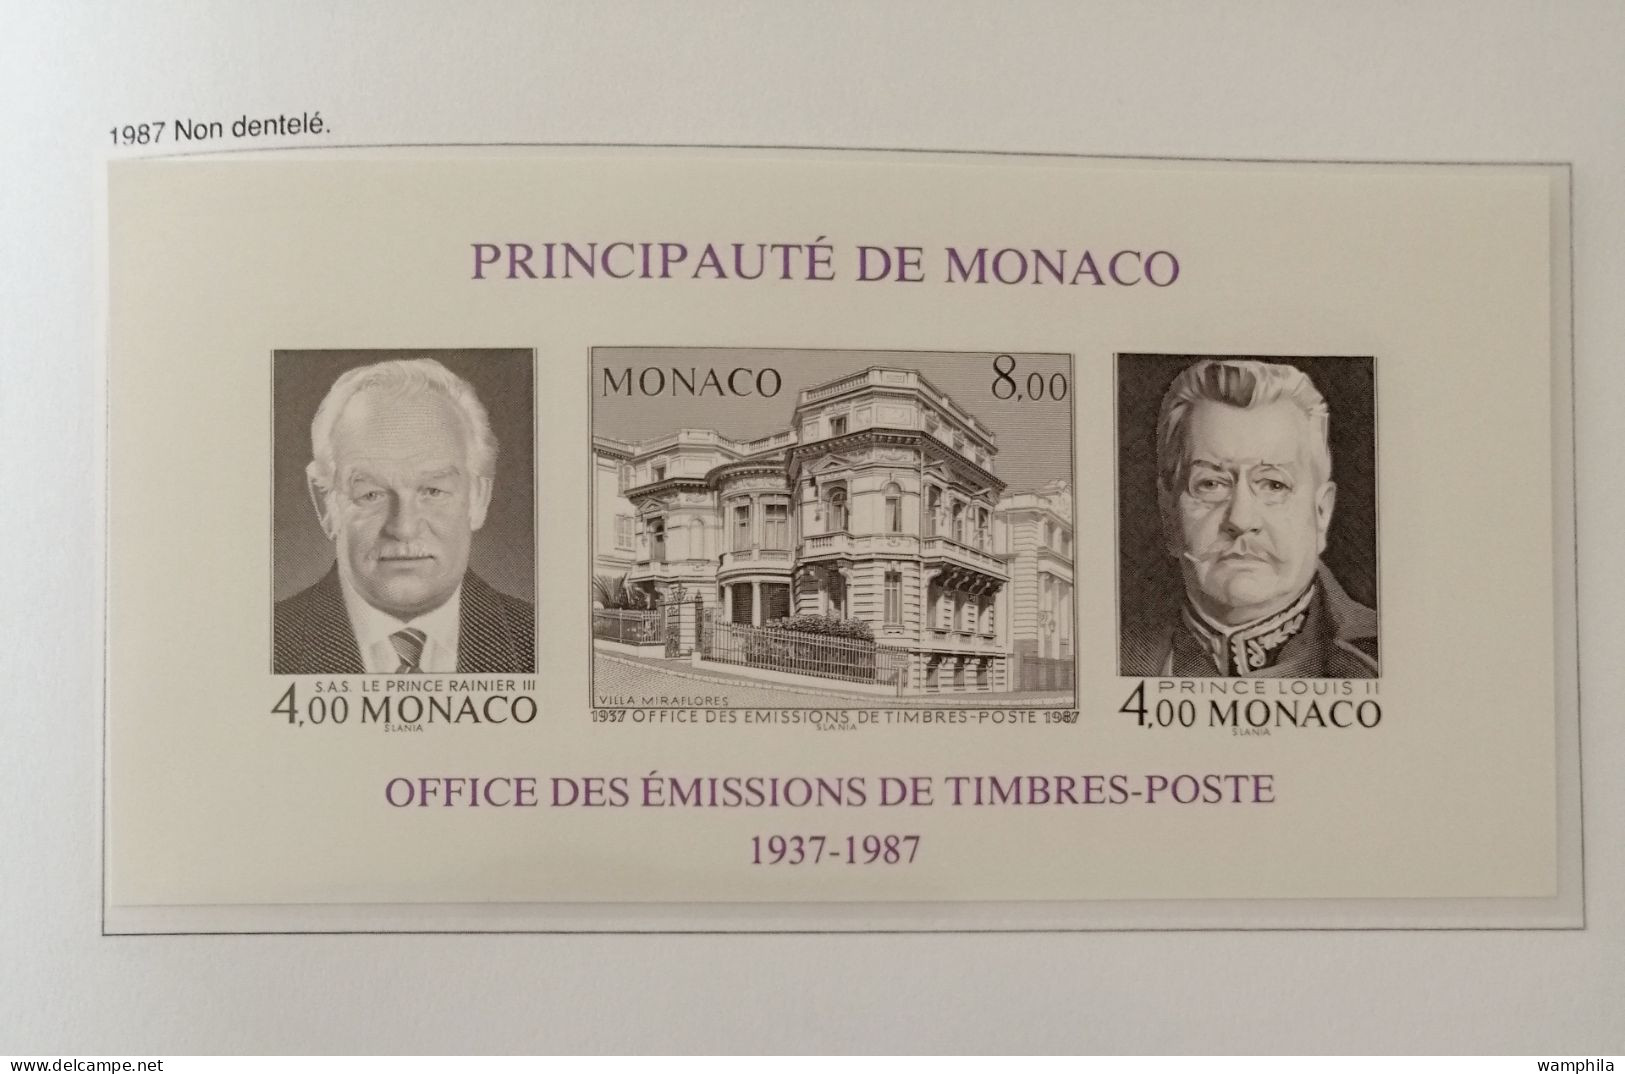 Monaco une collection en album "DAVO" 1980/1987** poste. P.A. blocs, préoblitérés, taxe. cote +1500€.